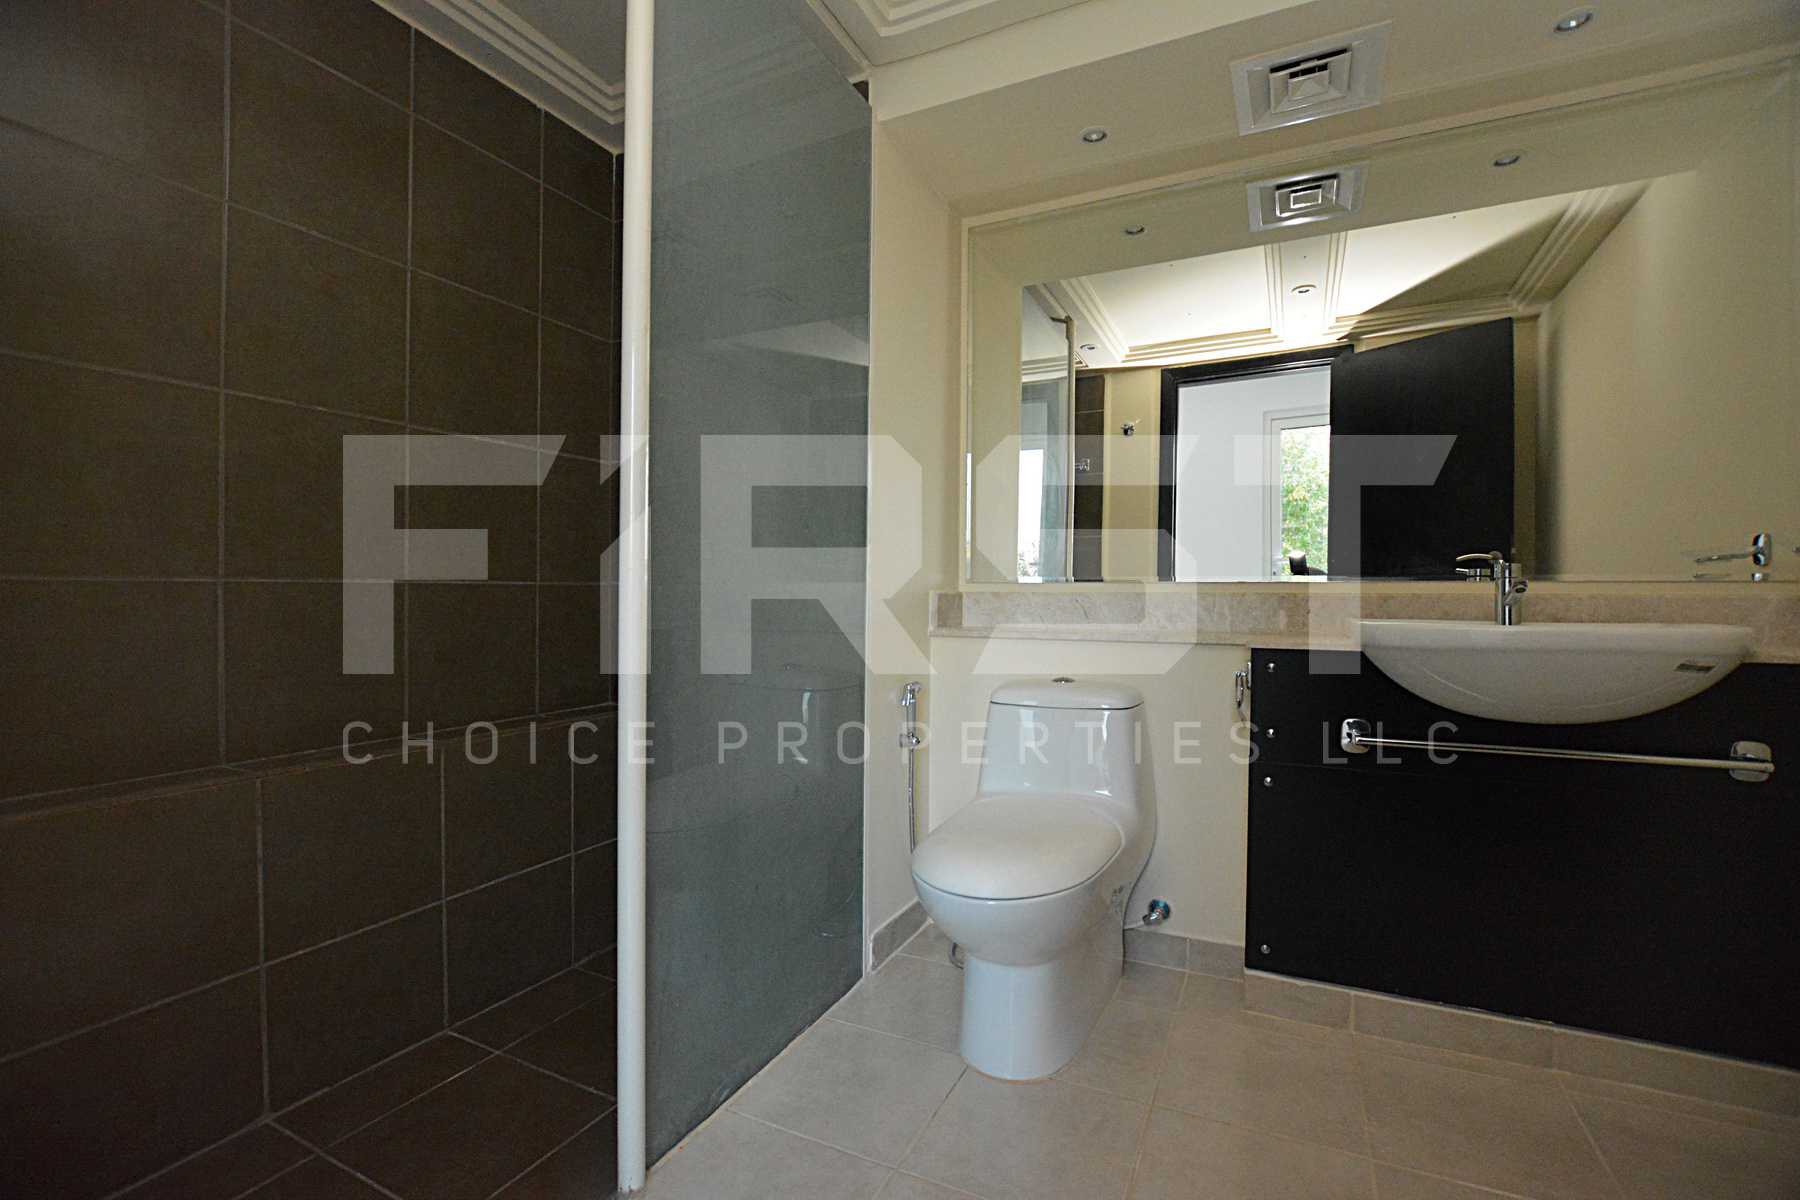 Internal Photo of 5 Bedroom Villa in Al Reef Villas 348.3 sq.m-3749 sq.ft-Abu Dhabi -UAE (63).jpg